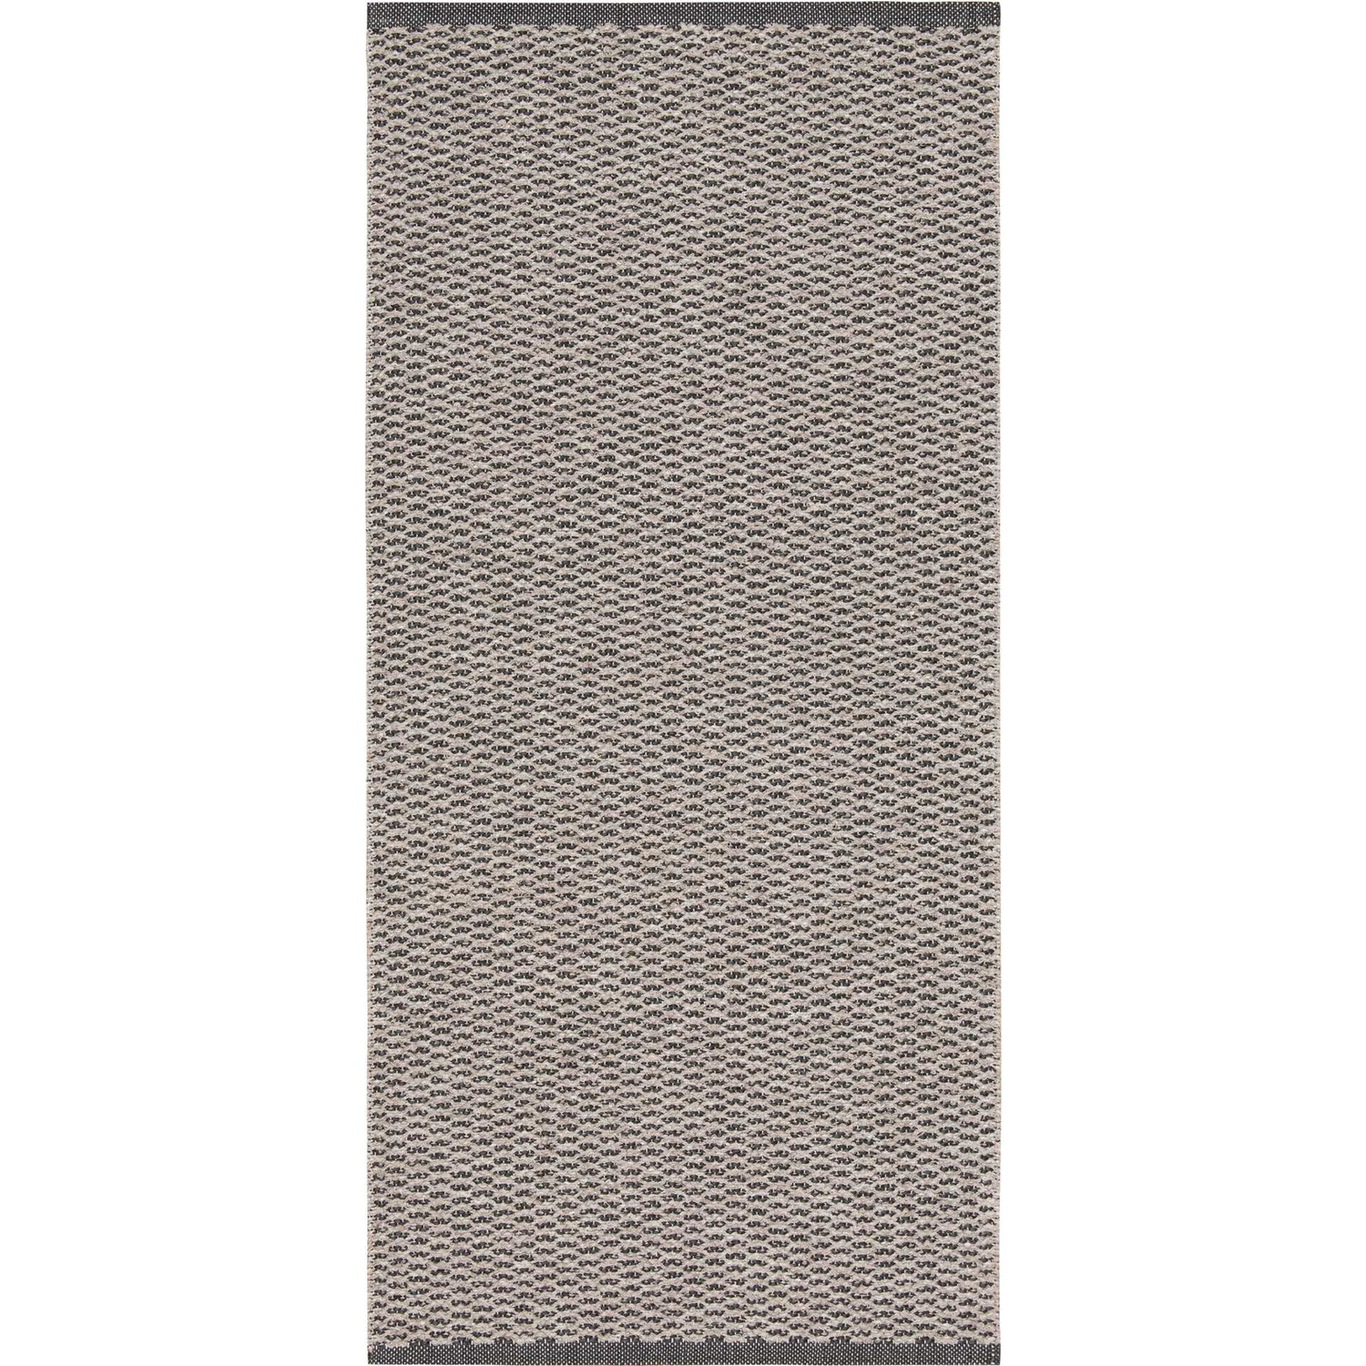 Mixed Signe Teppich 150x200 cm, Grau